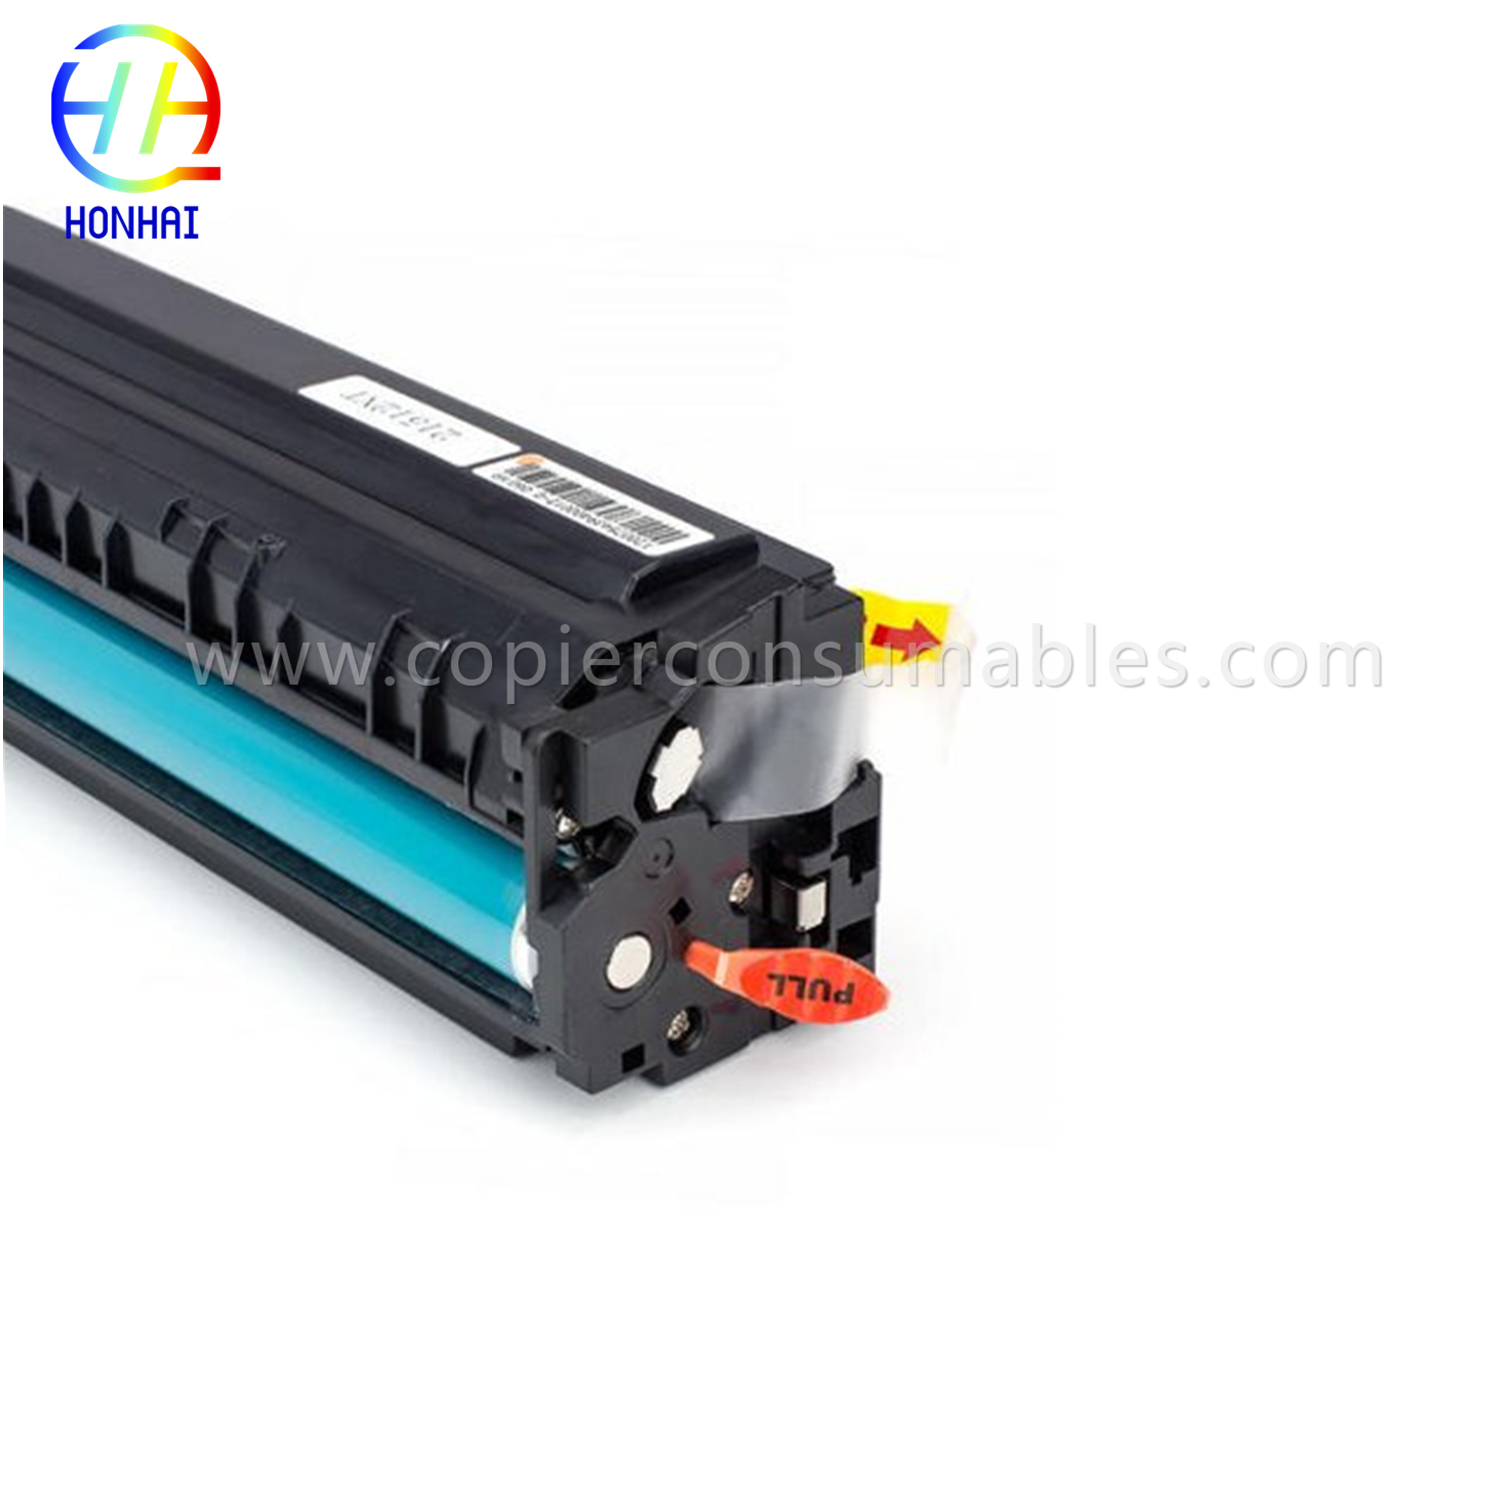 https://www.copierhonhaitech.com/toner-cartridge-for-hp-color-laserjet-pro-m452dn-m452dw-m452nw-mfp-m377dw-mfp-m477fdn-mfp-m477fdw-mfp-w01a4-c oem-product/